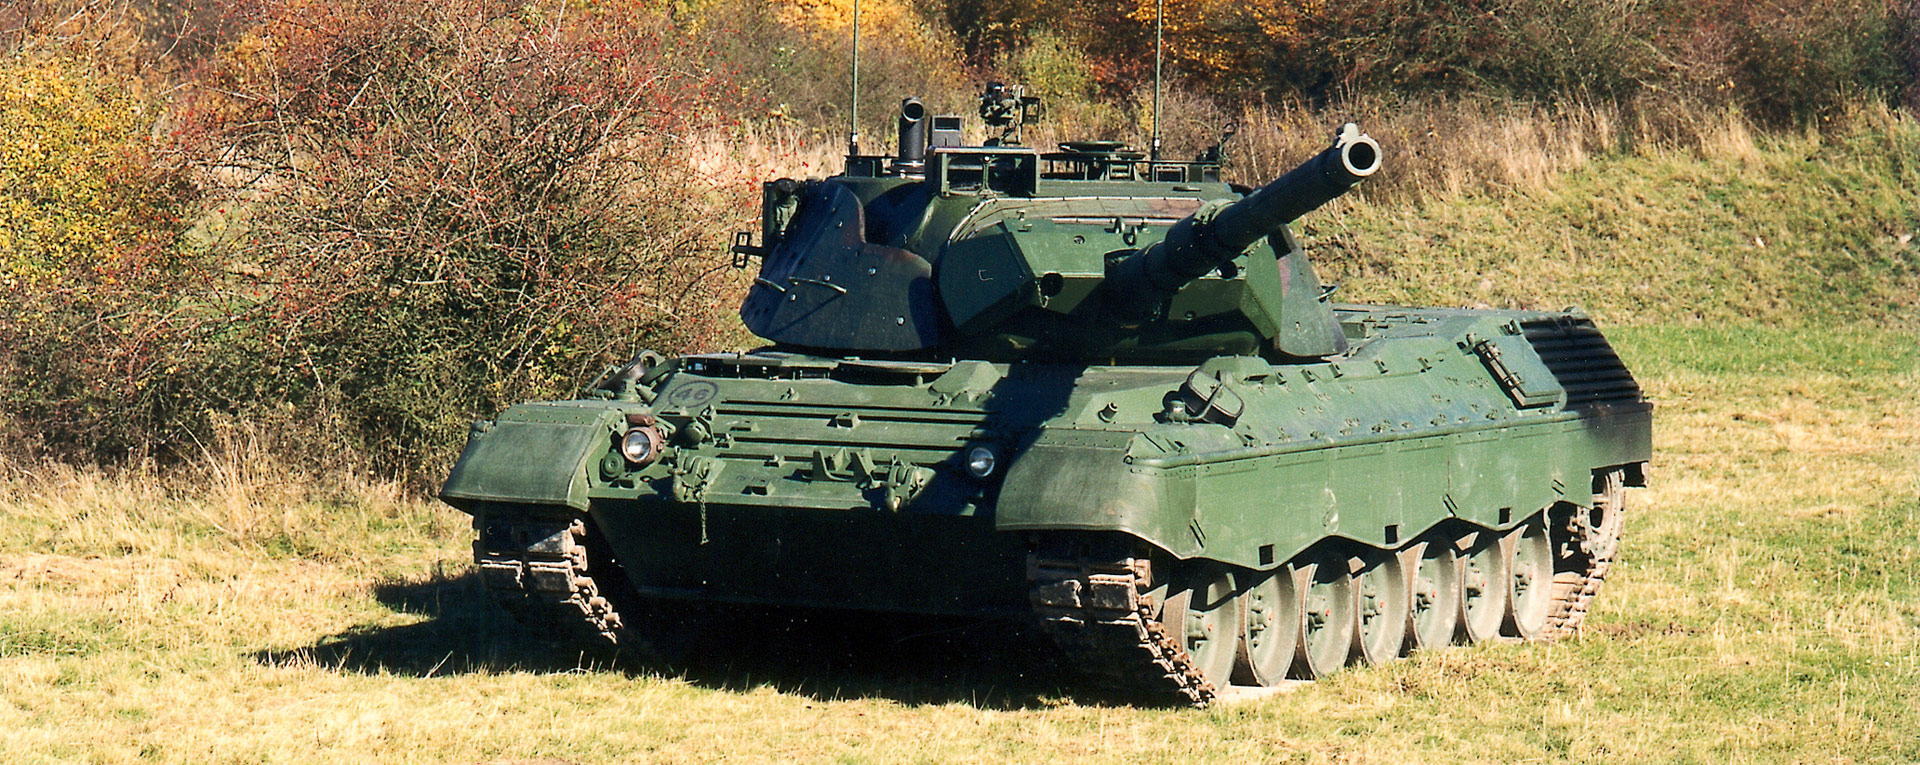 Գերմանիան կթույլատրի Leopard 1 տանկերի մատակարարումն Ուկրաինային